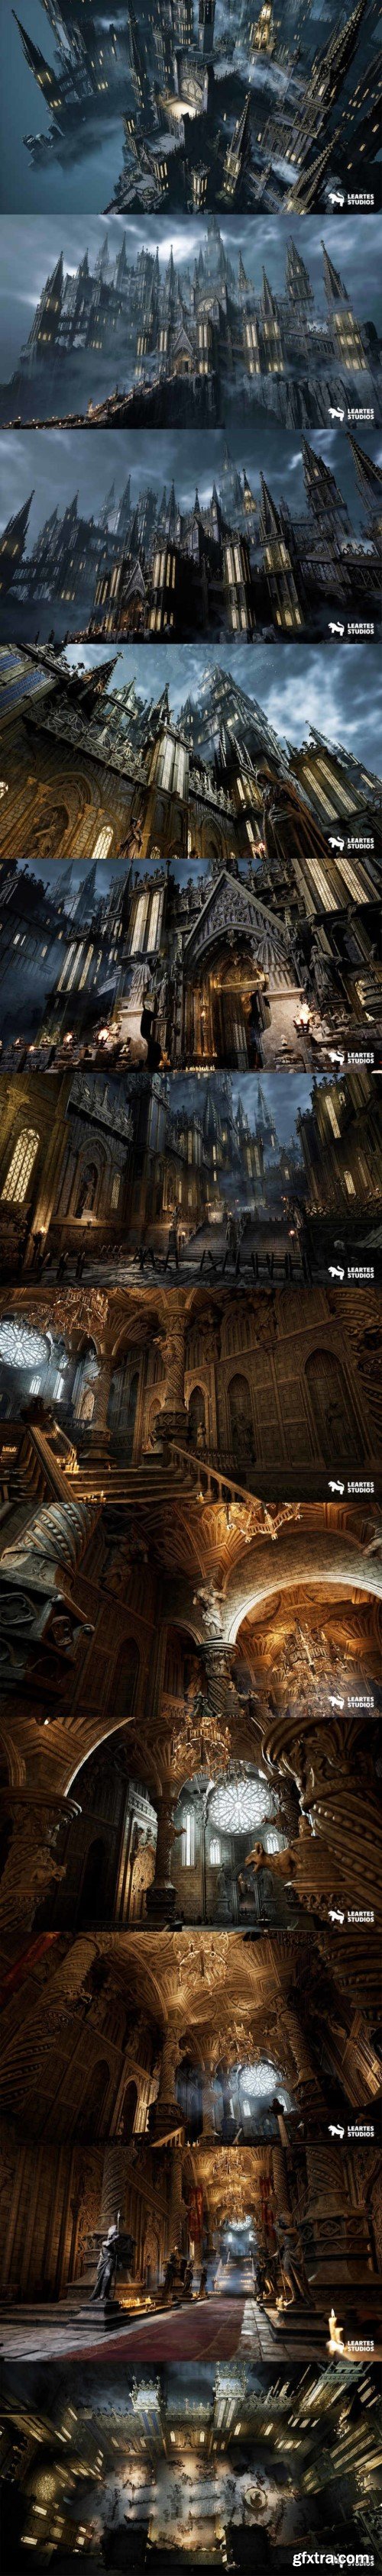 Unreal Engine - Fantasy Castle Environment 5.0-5.3